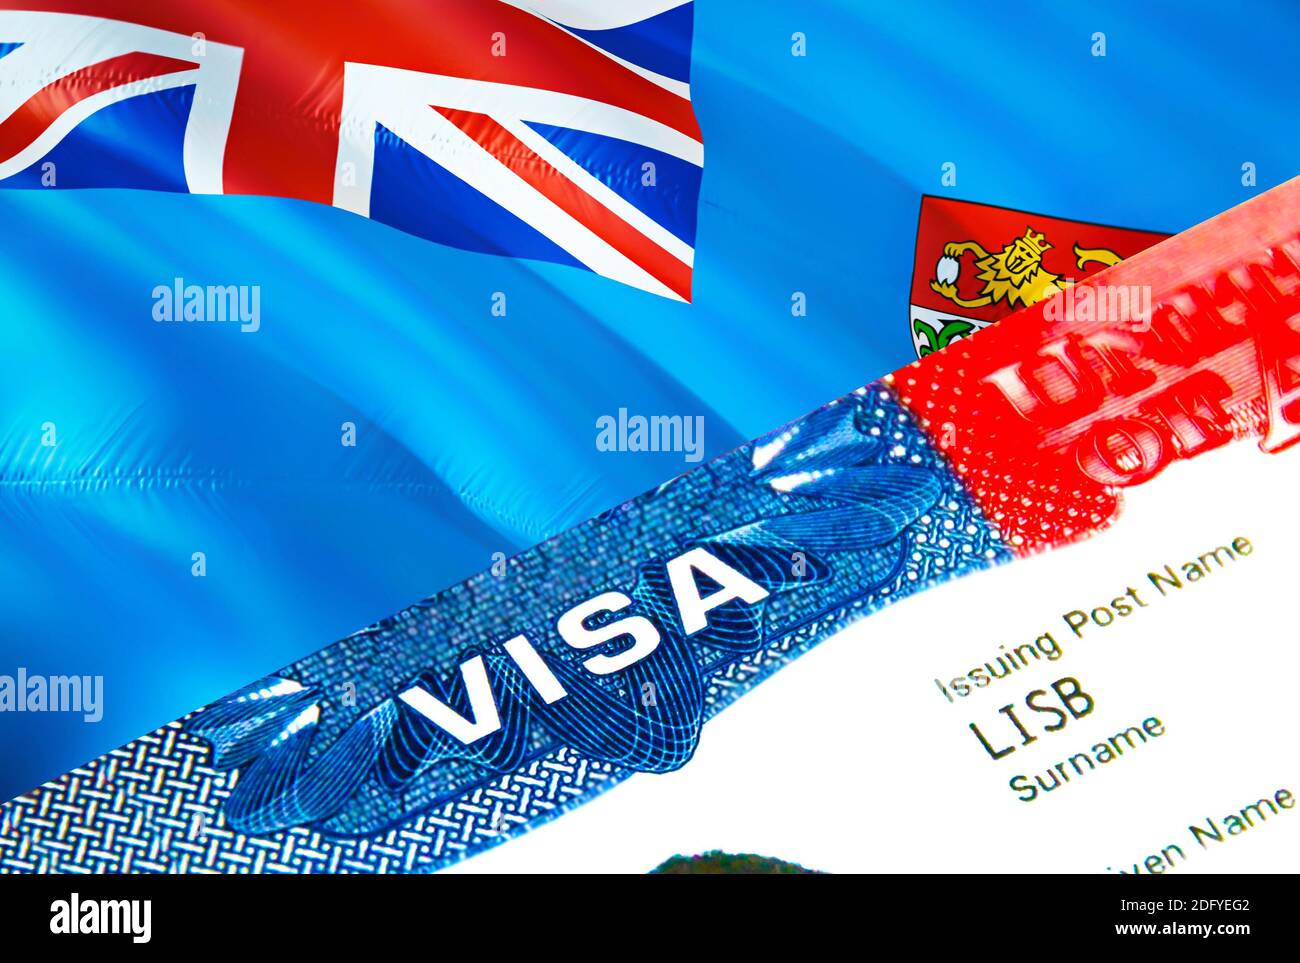 Fiji visa hi-res stock photography and images - Alamy